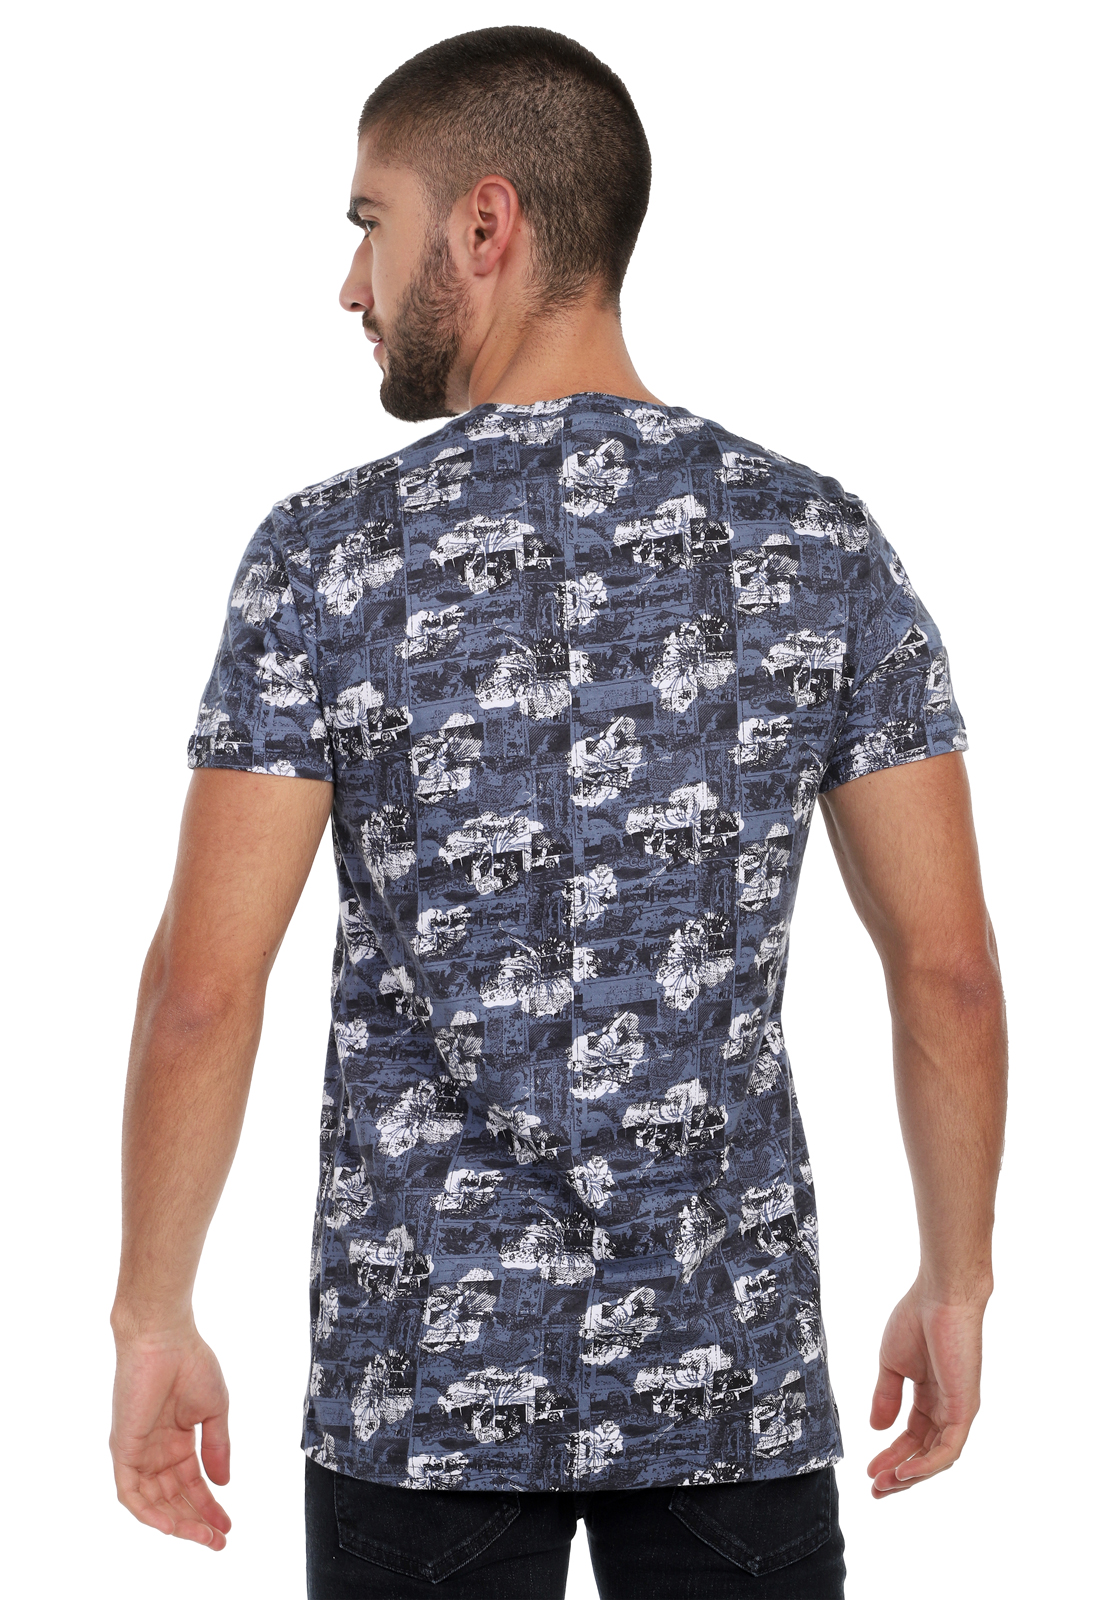 T-shirt para hombre sublimada azul, negra, blanca pic photo